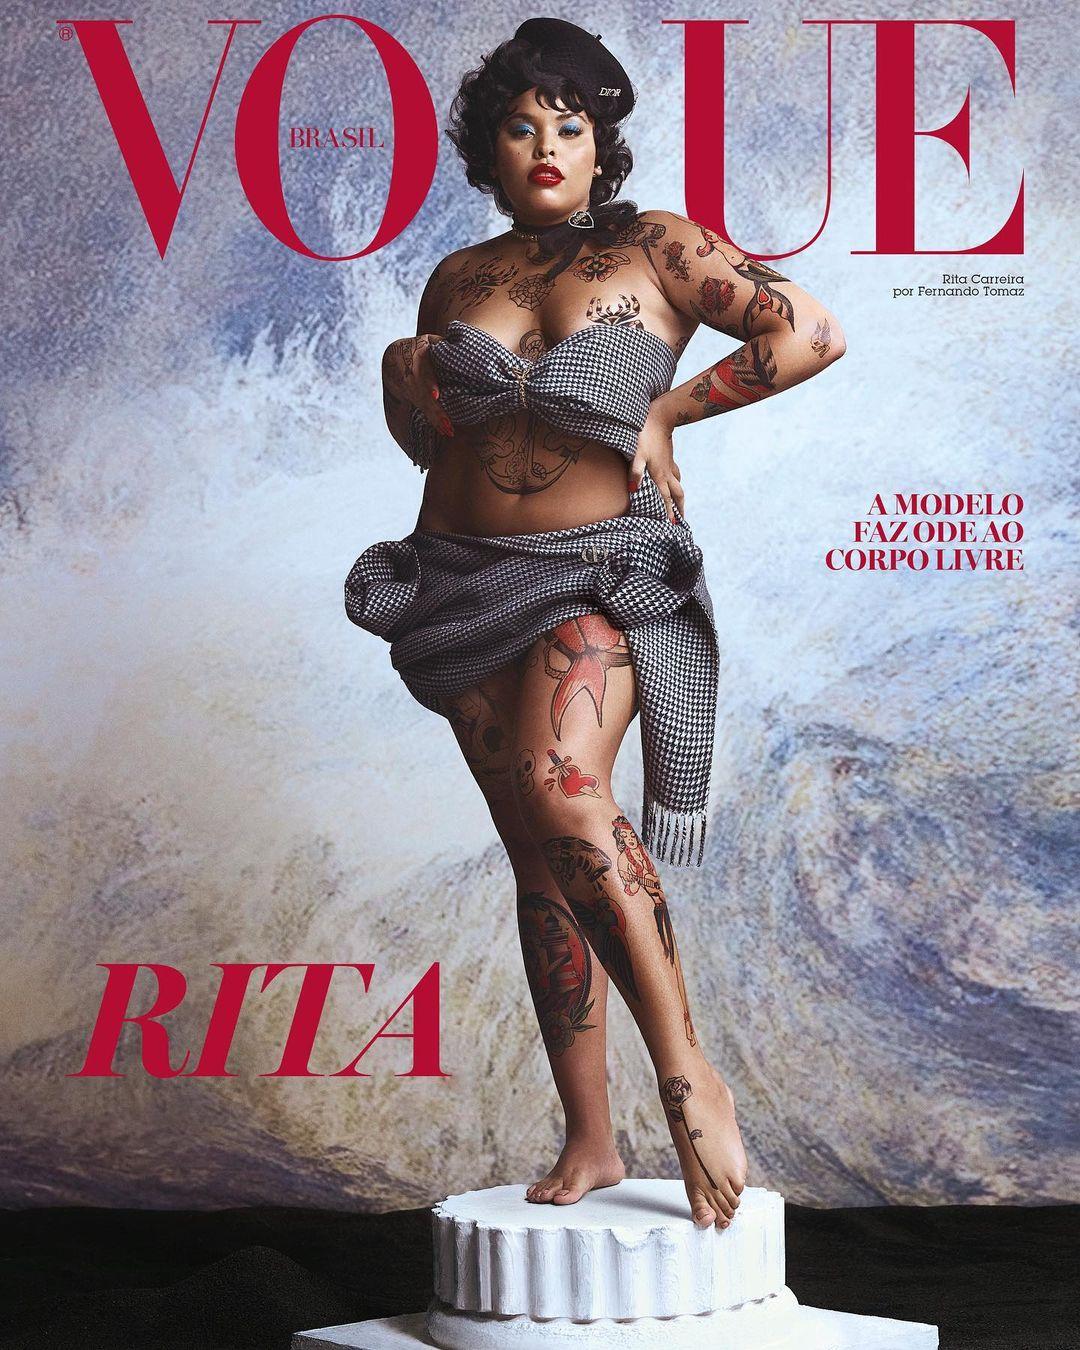 Imagem mostra capa da revista vogue com a modelo rita carreira